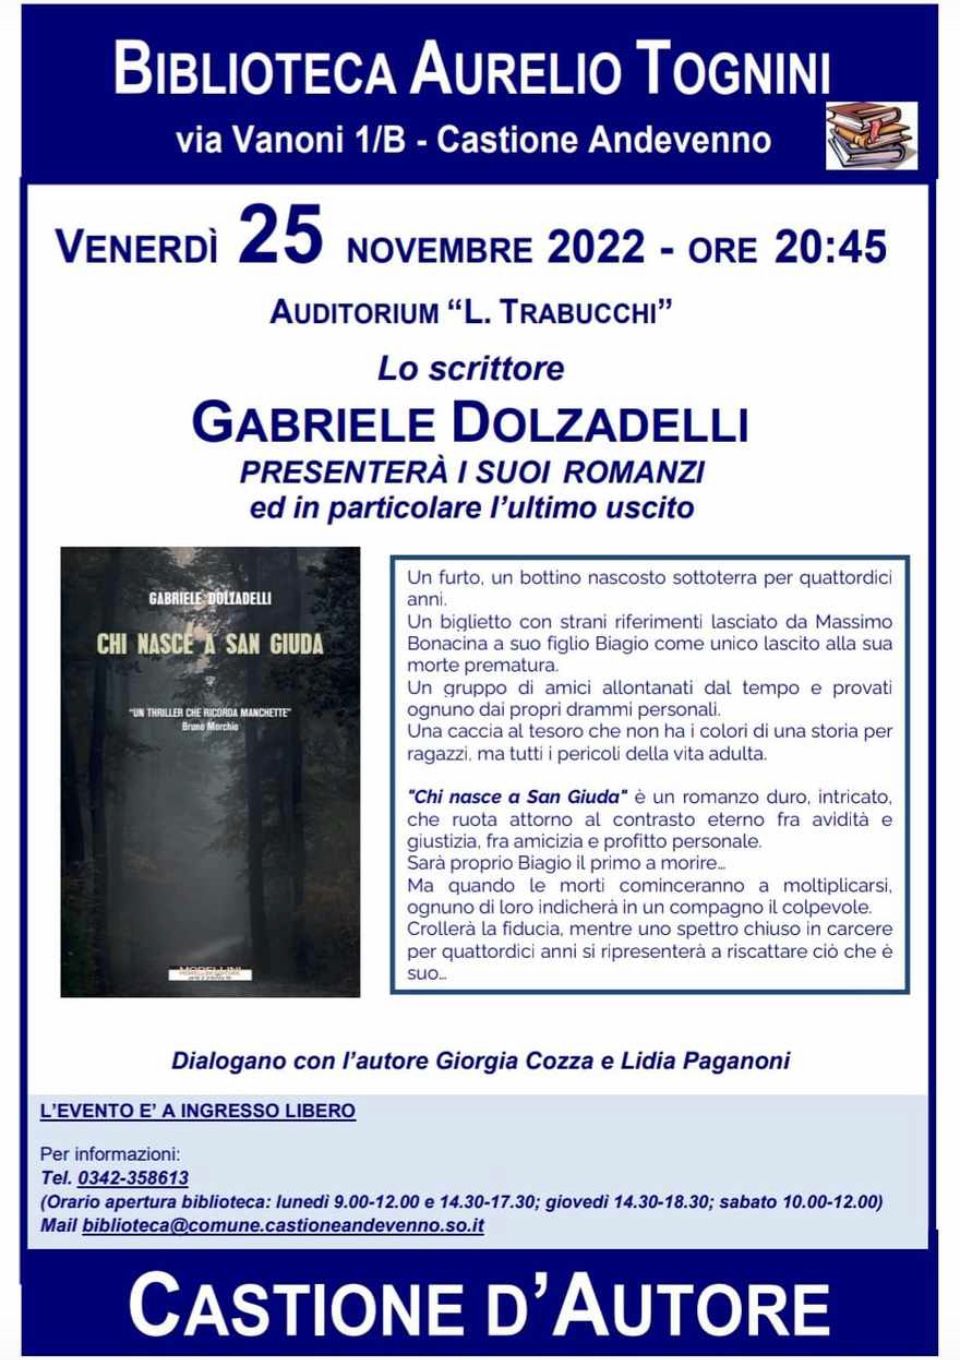 Incontro con lo scrittore Gabriele Dolzadelli